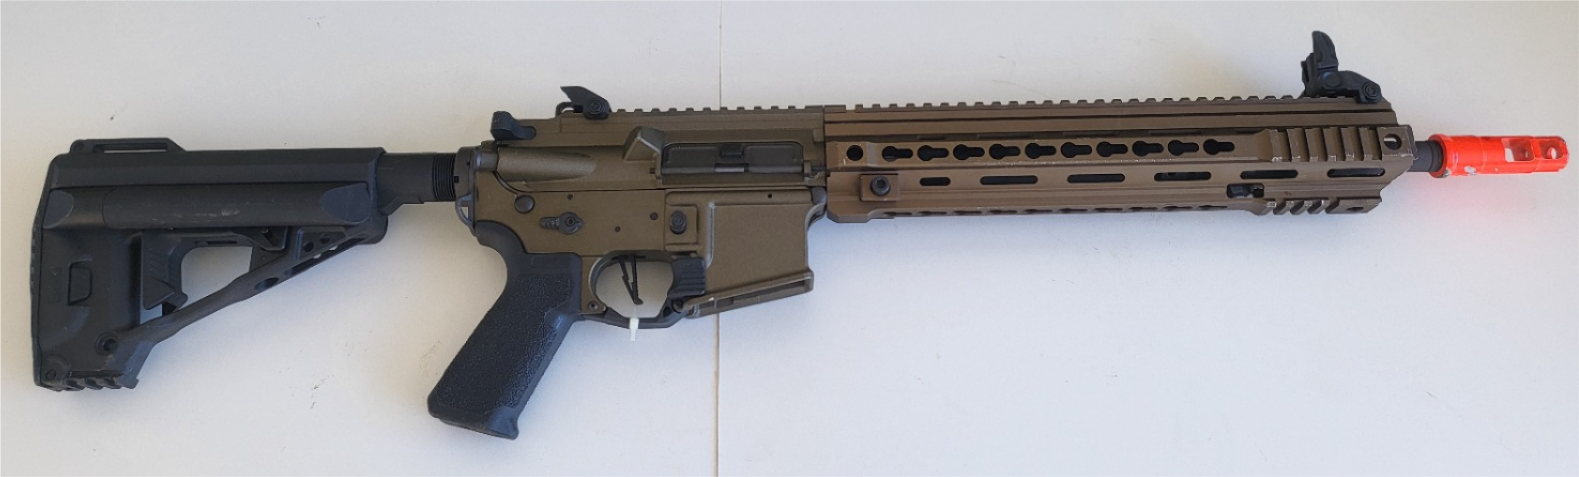 Umarex VFC Avalon Calibur Carbine AEG Airsoft Rifle - Bronze - USED